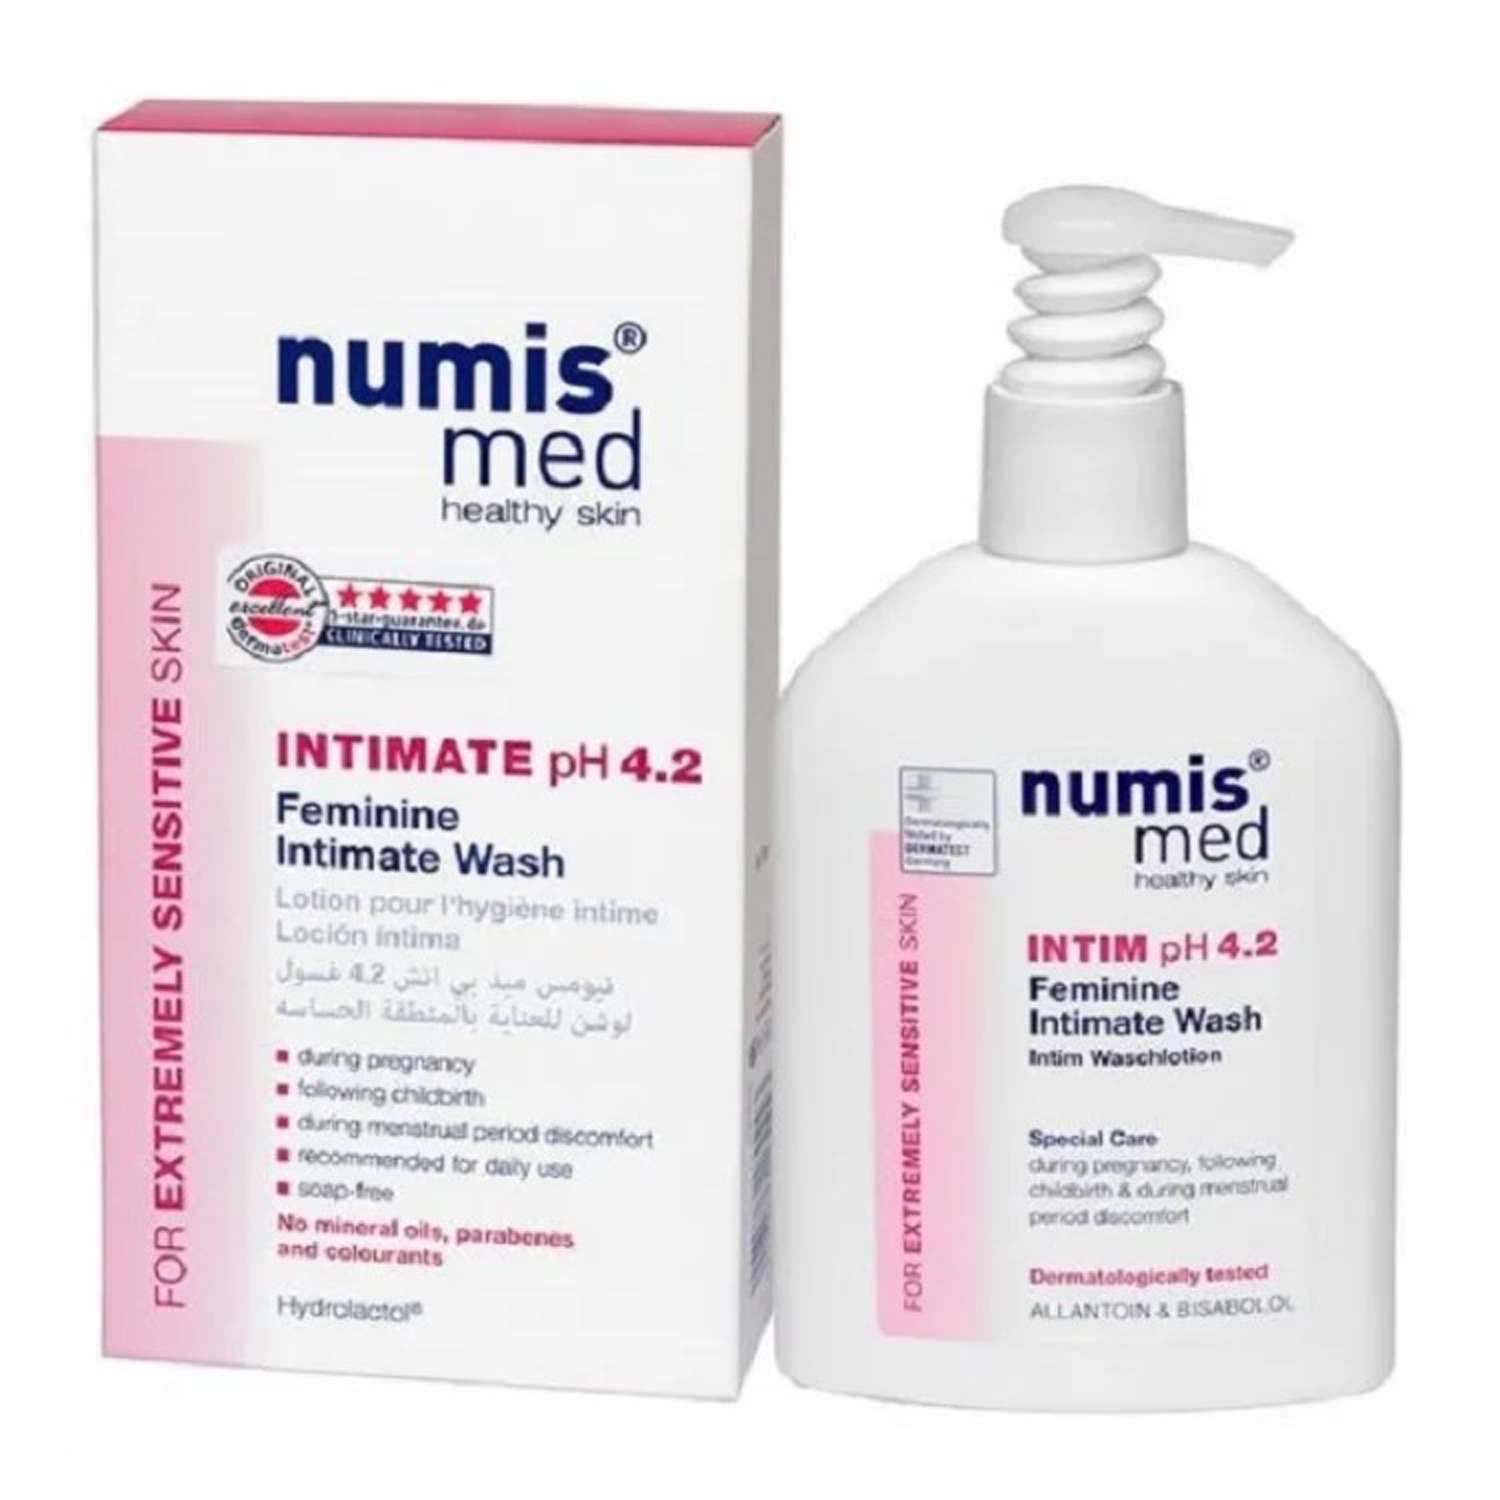 Гель для интимной гигиены numis® med pH 4.2 нежный уход для чувствительных участков 200 мл - фото 1